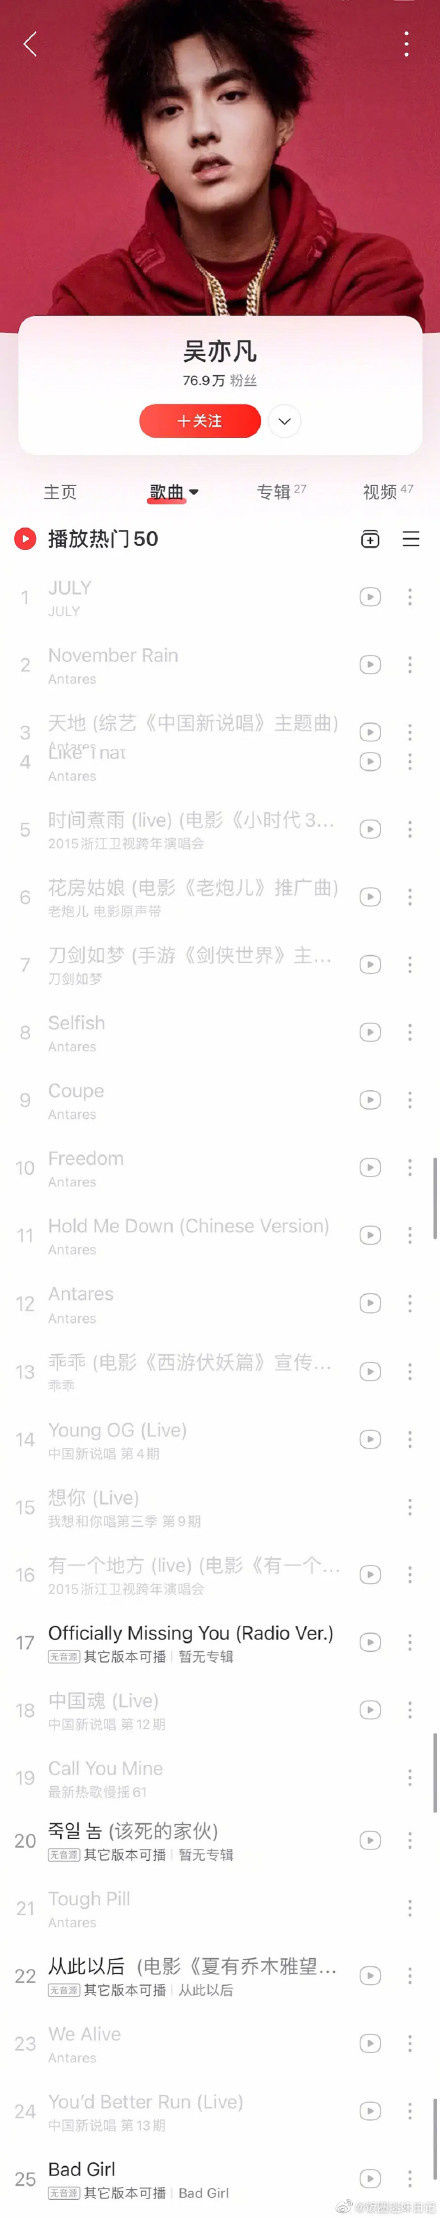 吴亦凡微博被封，全部歌曲被多家平台下架